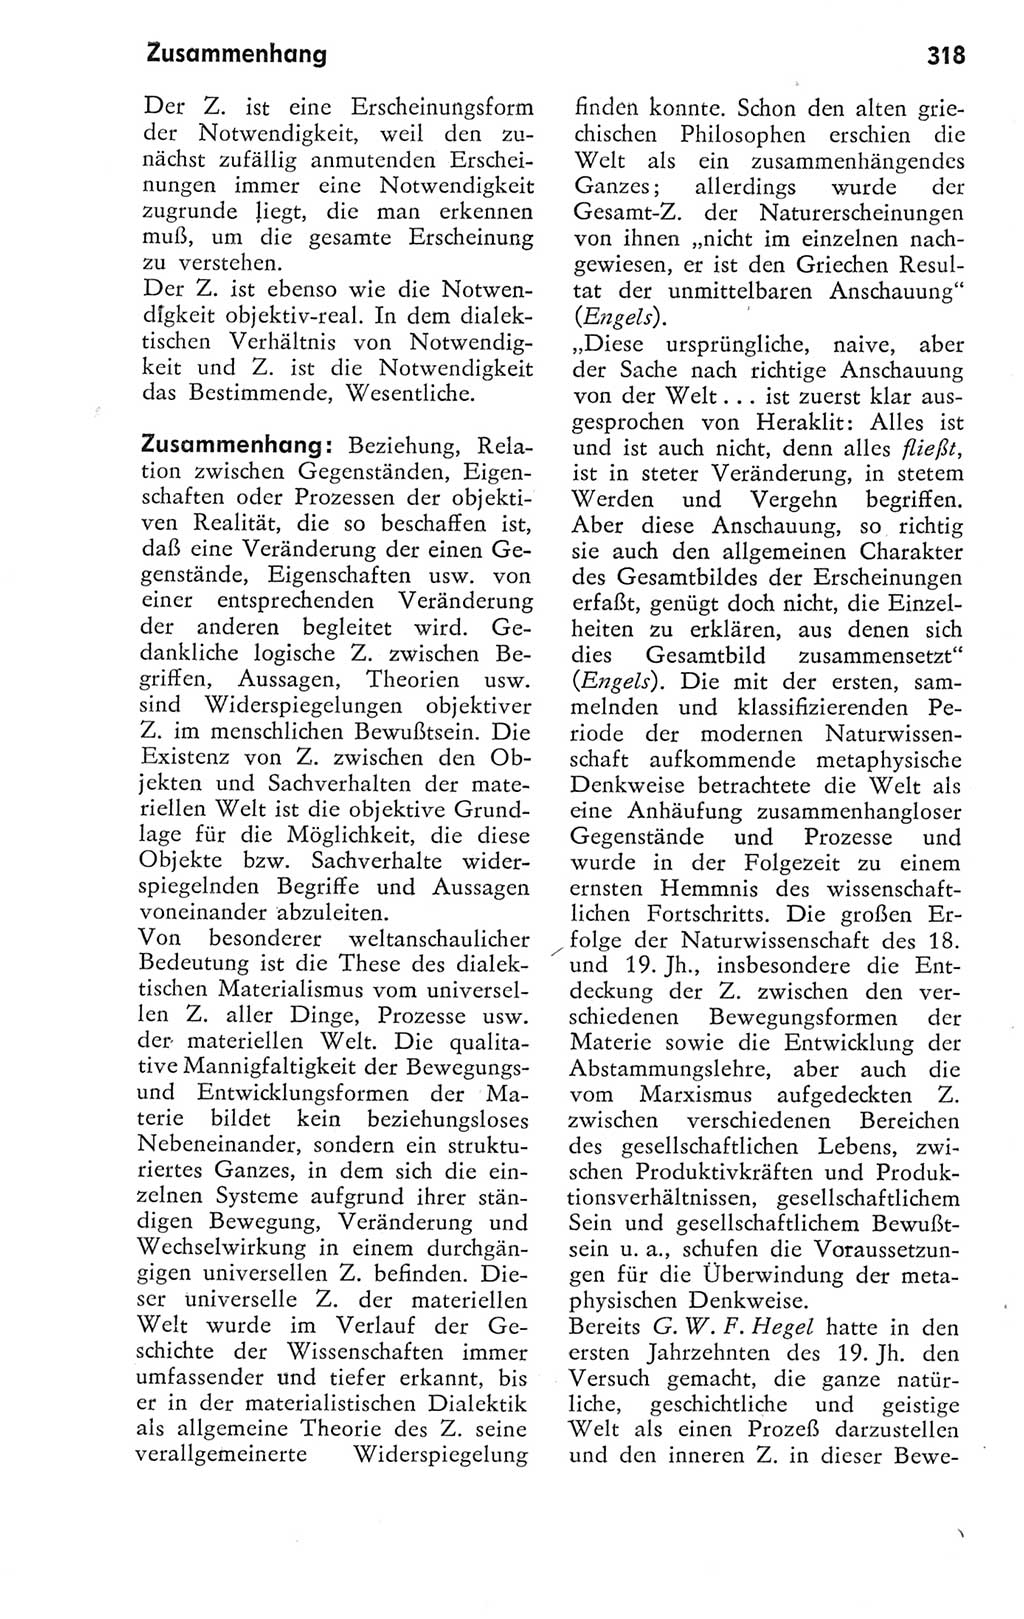 Kleines Wörterbuch der marxistisch-leninistischen Philosophie [Deutsche Demokratische Republik (DDR)] 1974, Seite 318 (Kl. Wb. ML Phil. DDR 1974, S. 318)